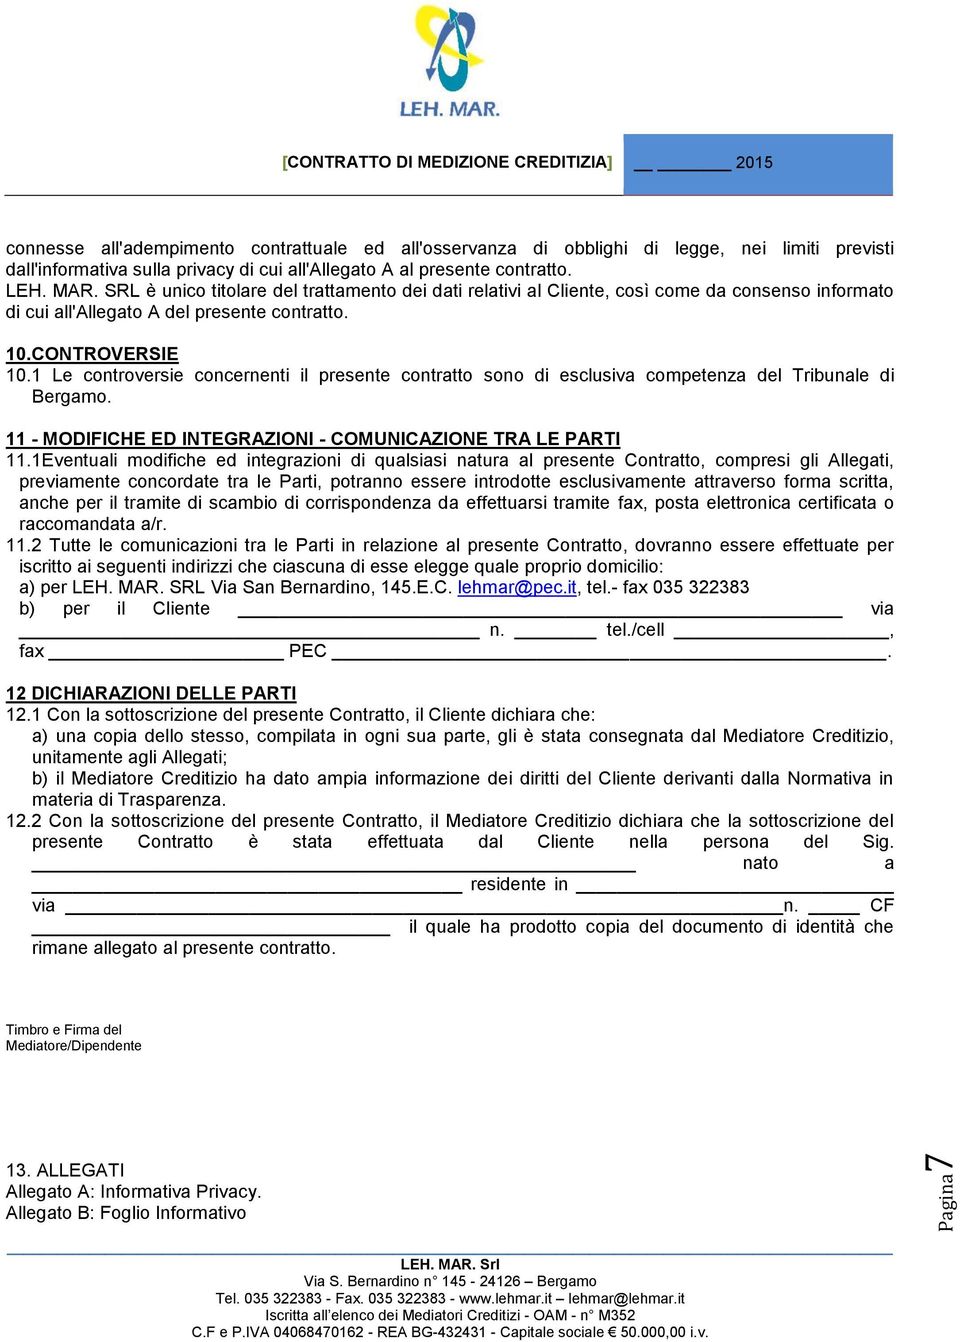 1 Le controversie concernenti il presente contratto sono di esclusiva competenza del Tribunale di Bergamo. 11 - MODIFICHE ED INTEGRAZIONI - COMUNICAZIONE TRA LE PARTI 11.